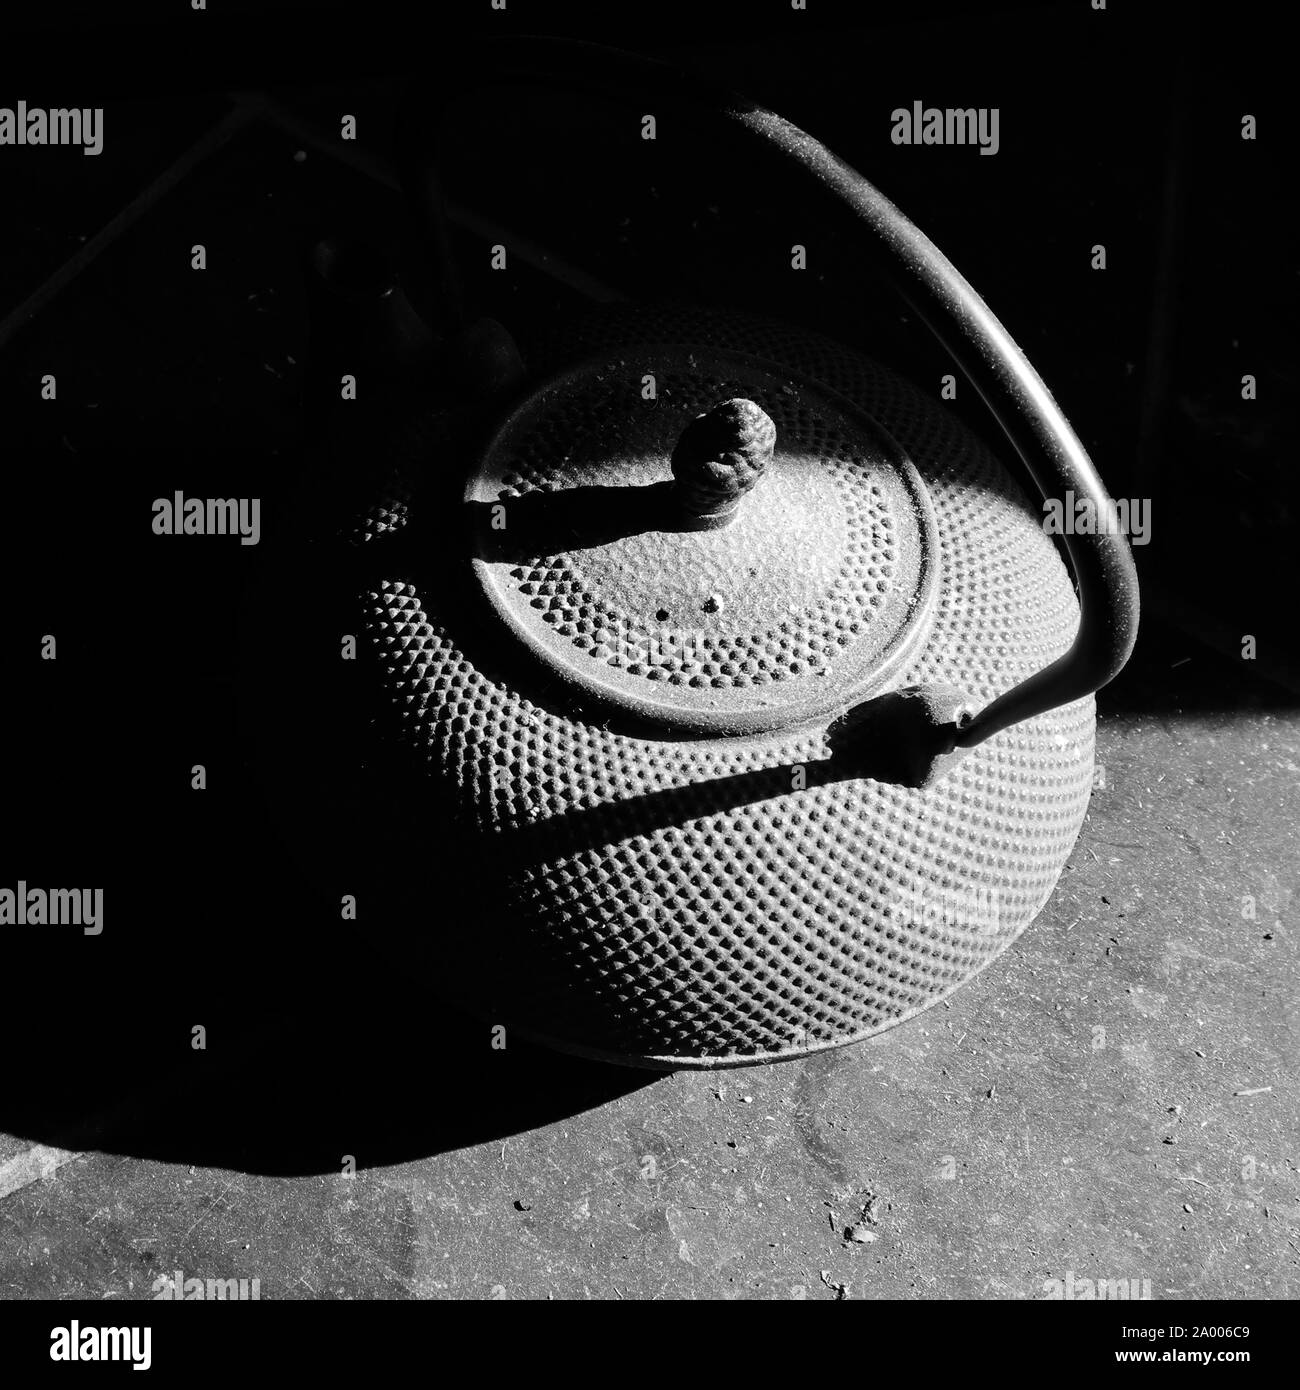 Tetera de hierro fundido negro sobre baldosas de pizarra sucio, cubierto de polvo, iluminada por la luz solar y se oculta en la sombra. Fotografía en blanco y negro. Foto de stock